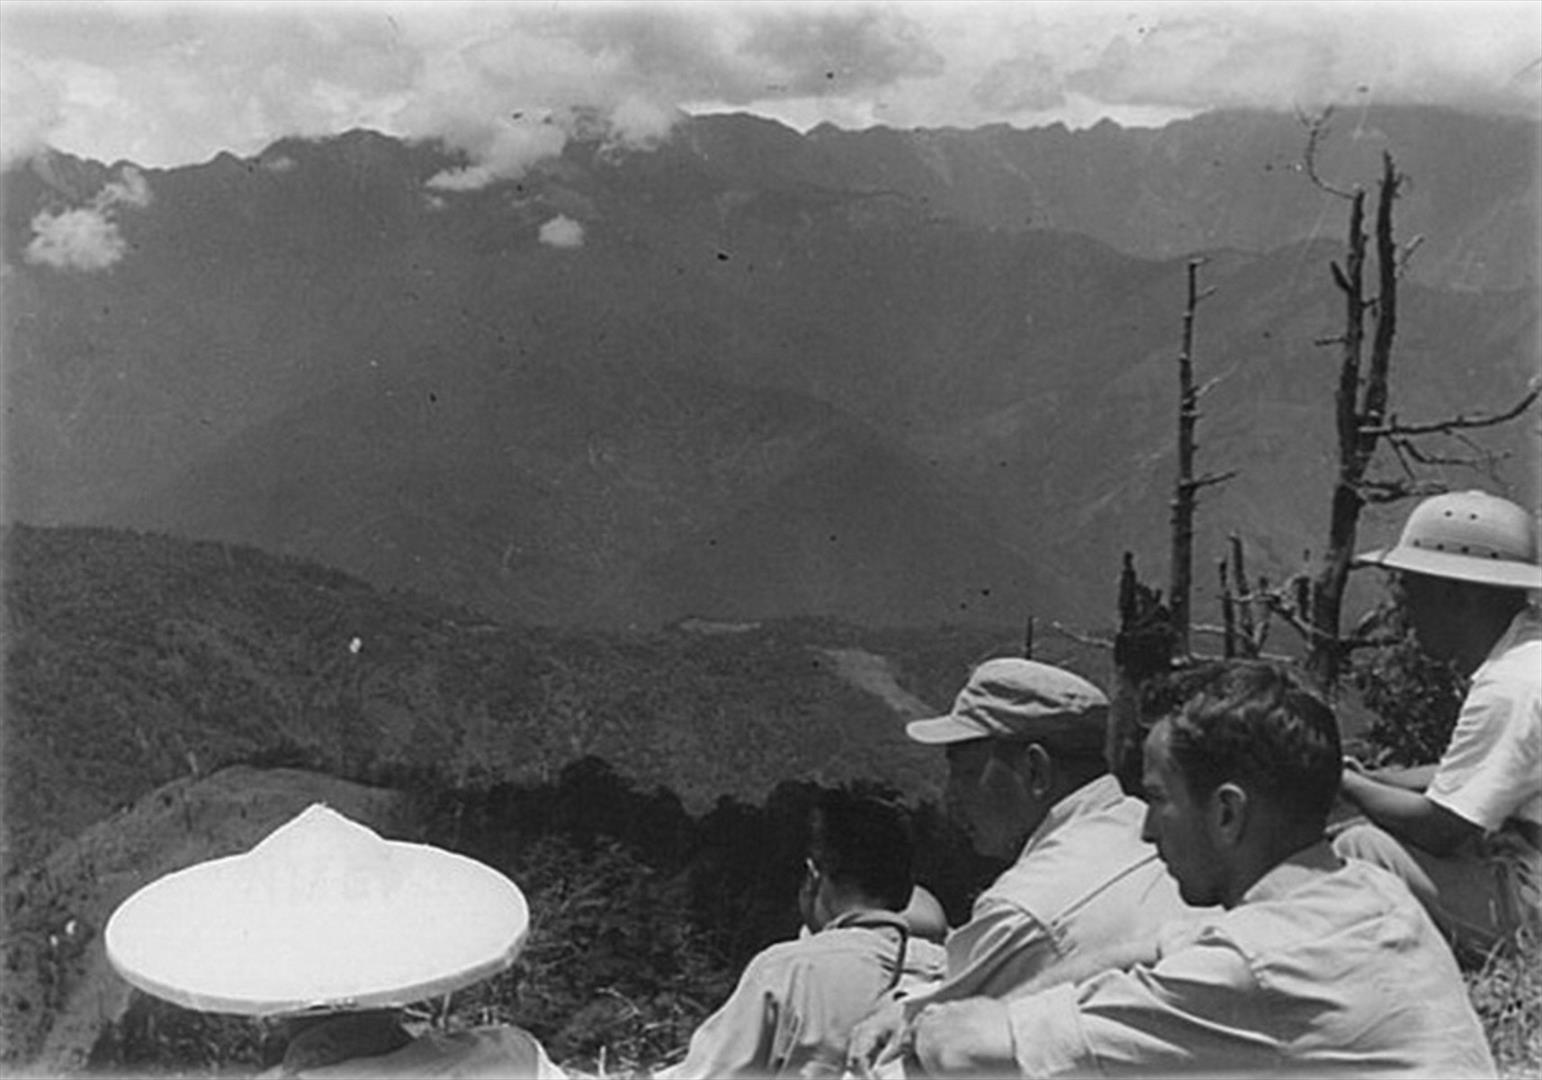 民國45年6月29日「中部橫貫公路」勘察行程，輔導會代主任委員經國先生率隊與隨行成員途中小憩，並遠眺中央山脈之一景。